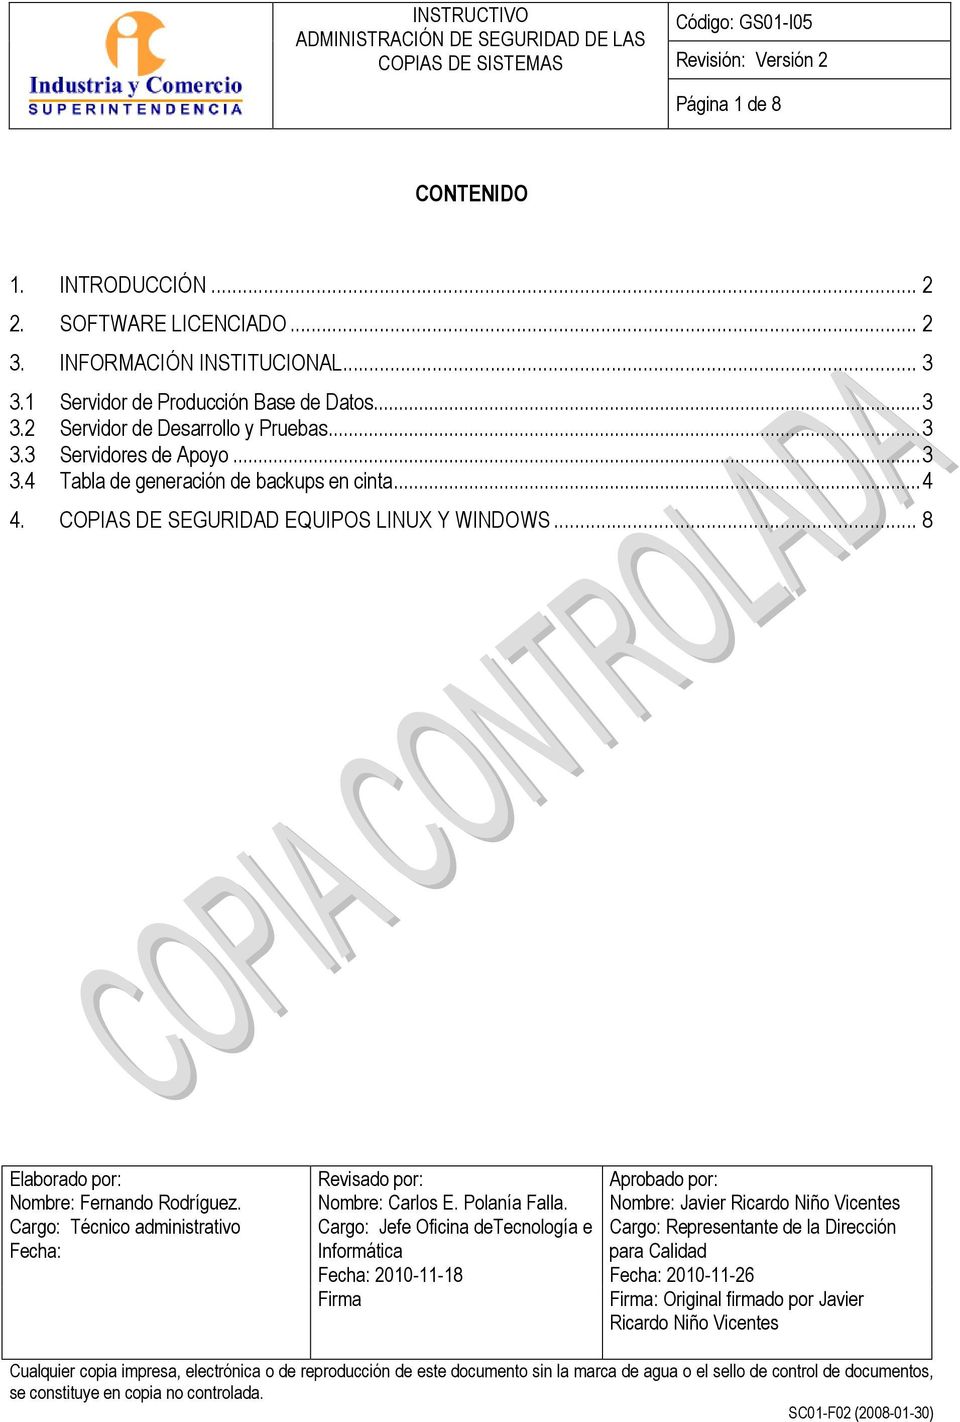 Cargo: Técnico administrativo Fecha: Revisado por: Nombre: Carlos E. Polanía Falla.